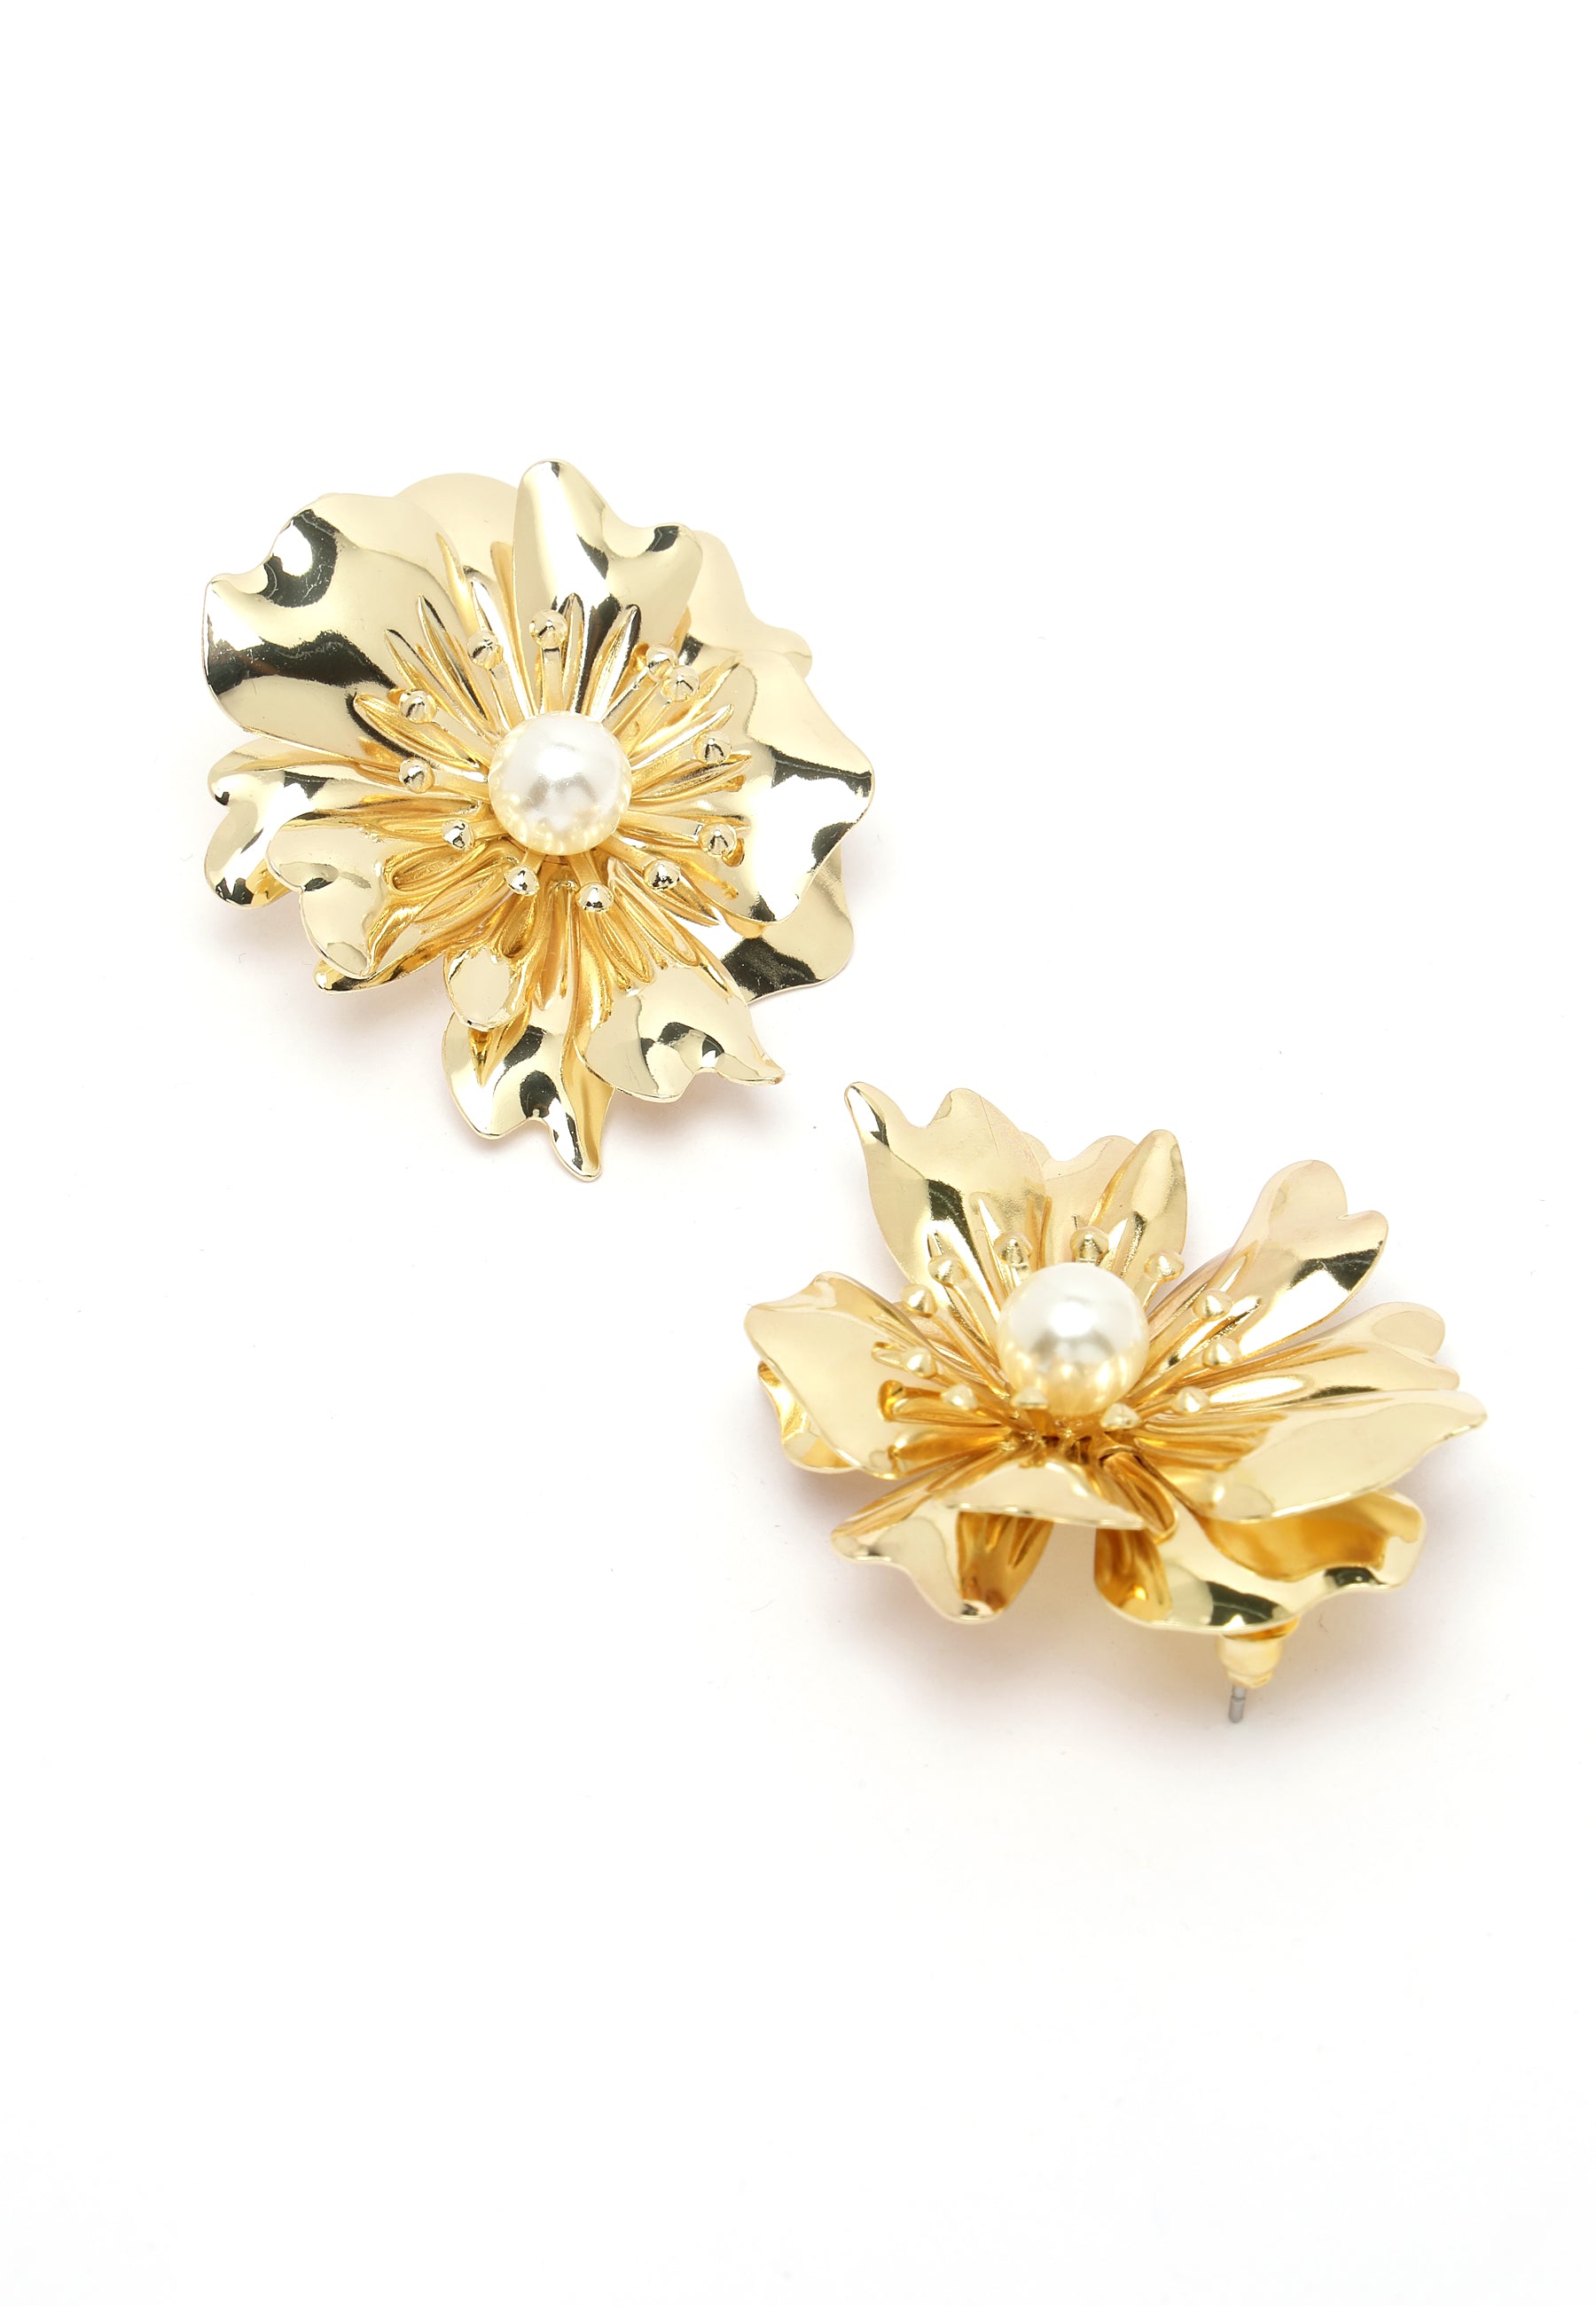 Vintage Pearl Gold-Colored Stud Earrings